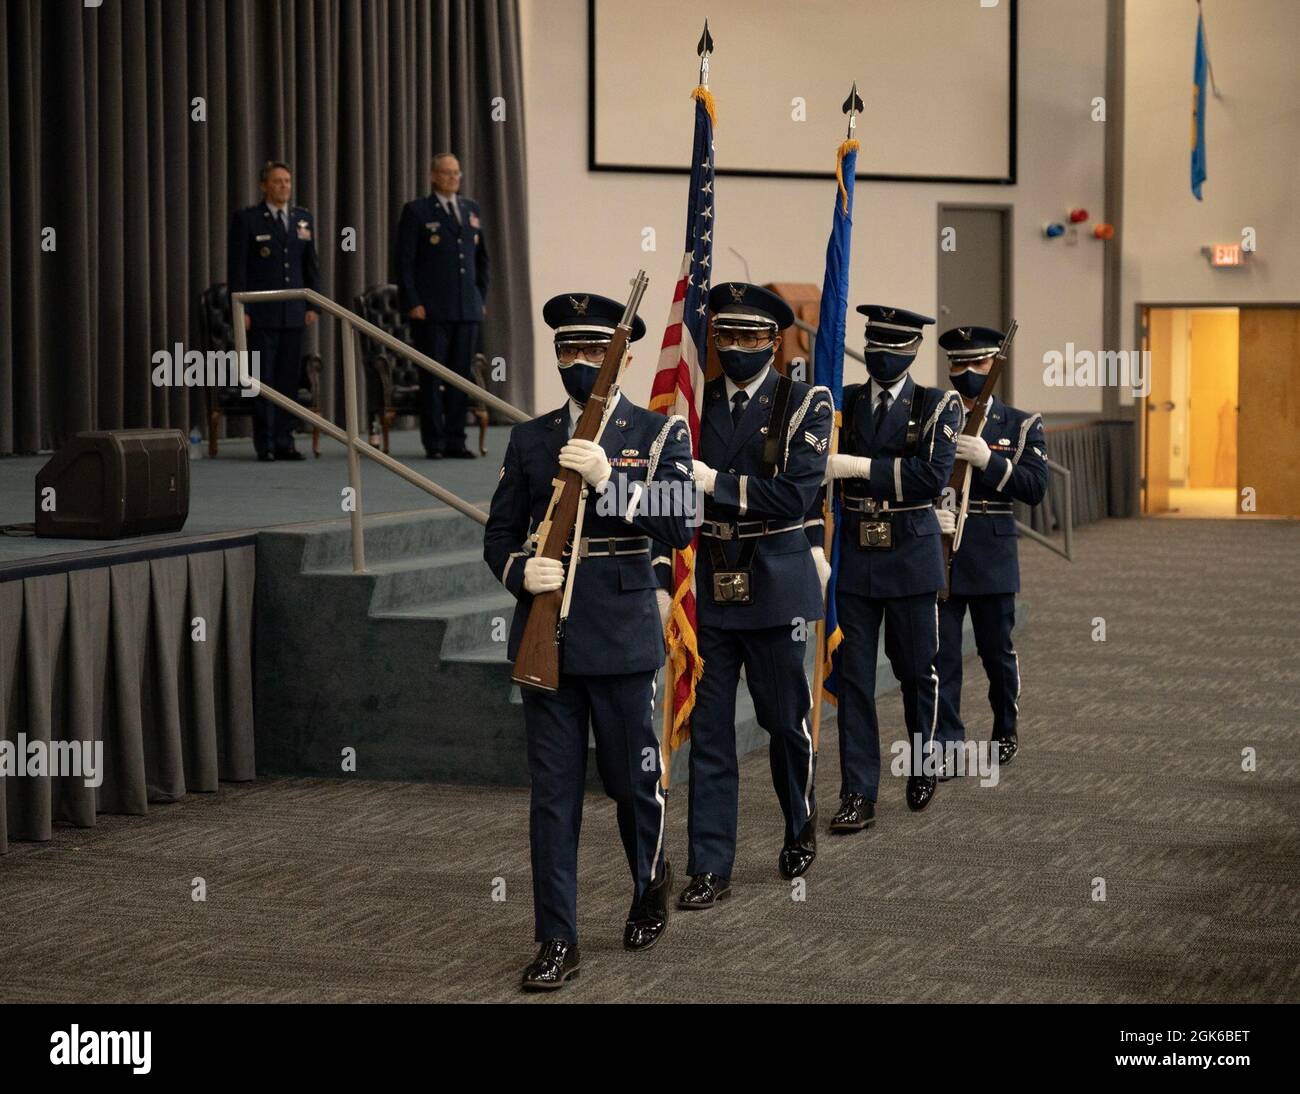 La Guardia de Honor de Barksdale hace una aparición en la jubilación del Coronel Stookey, subdirector del Comando de Huelga Global de la Fuerza Aérea de EE.UU. De operaciones y comunicaciones y oficial principal de información, en la Base de la Fuerza Aérea de Barksdale, Louisiana, 13 de agosto de 2021. Stookey sirvió honrosamente por más de 36 años. Foto de stock